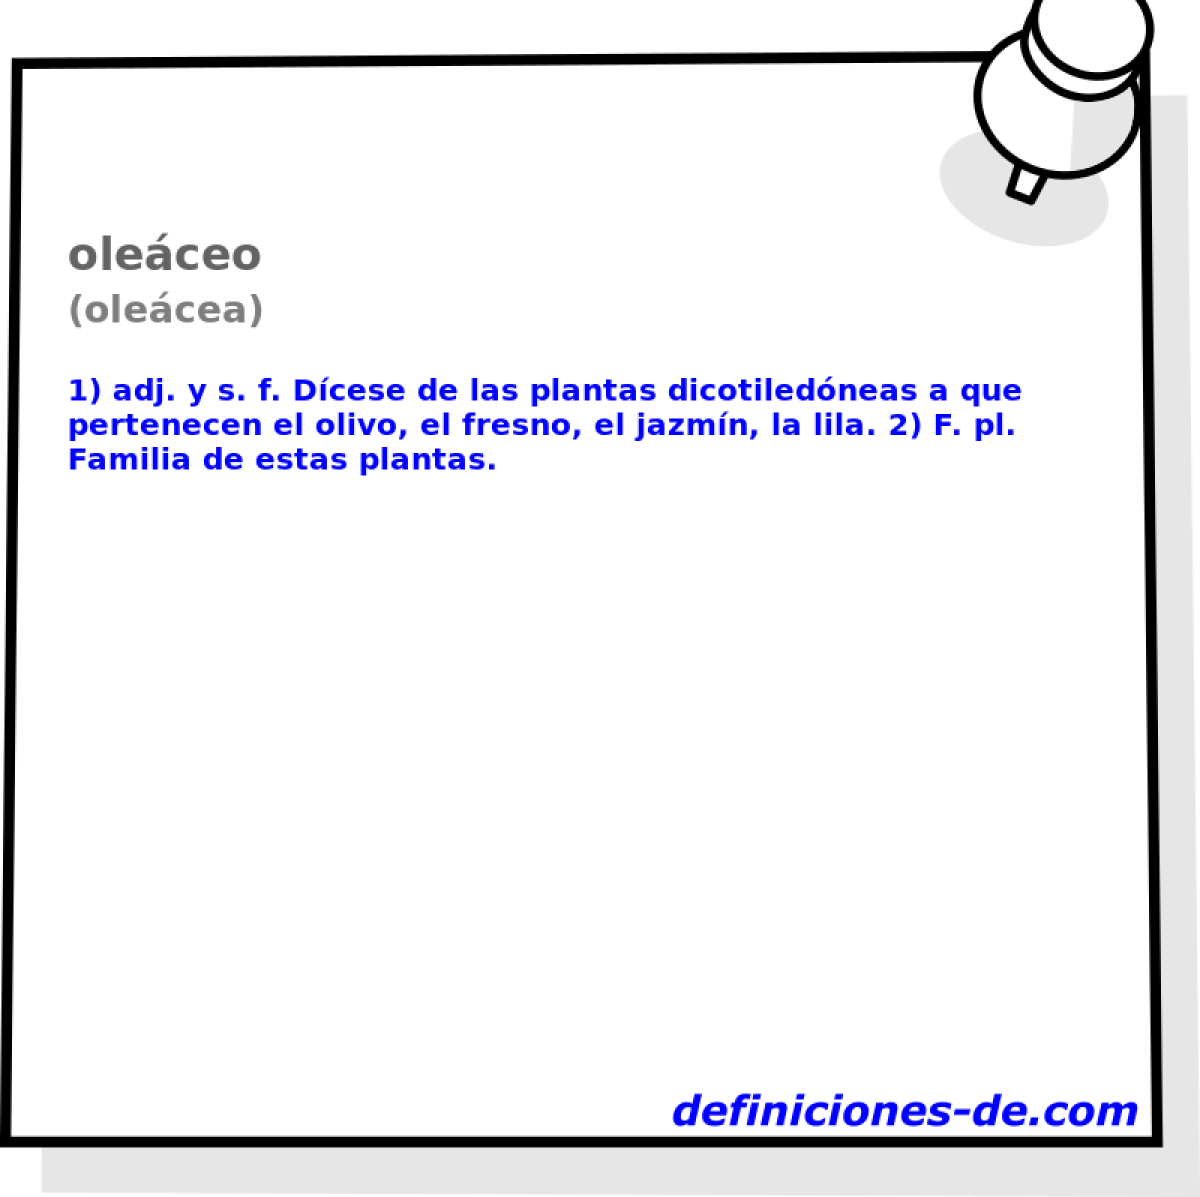 oleceo (olecea)